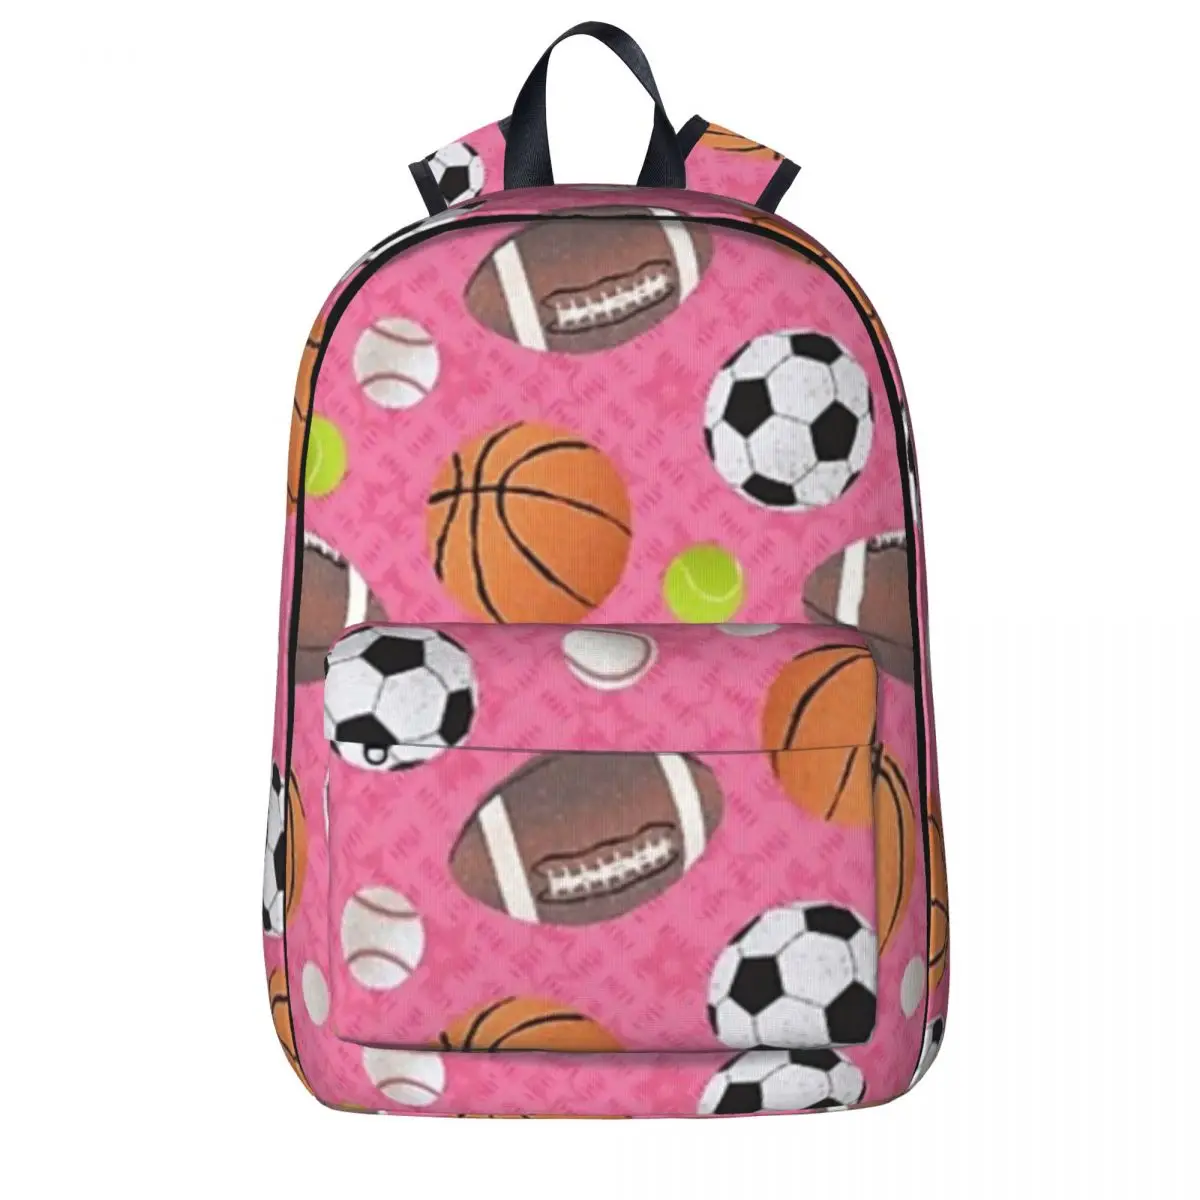 

Спортивный рюкзак с изображением Зал славы с шариками, сумка для книг для мальчиков и девочек, школьные ранцы для студентов, детский рюкзак для ноутбука, вместительная сумка на плечо